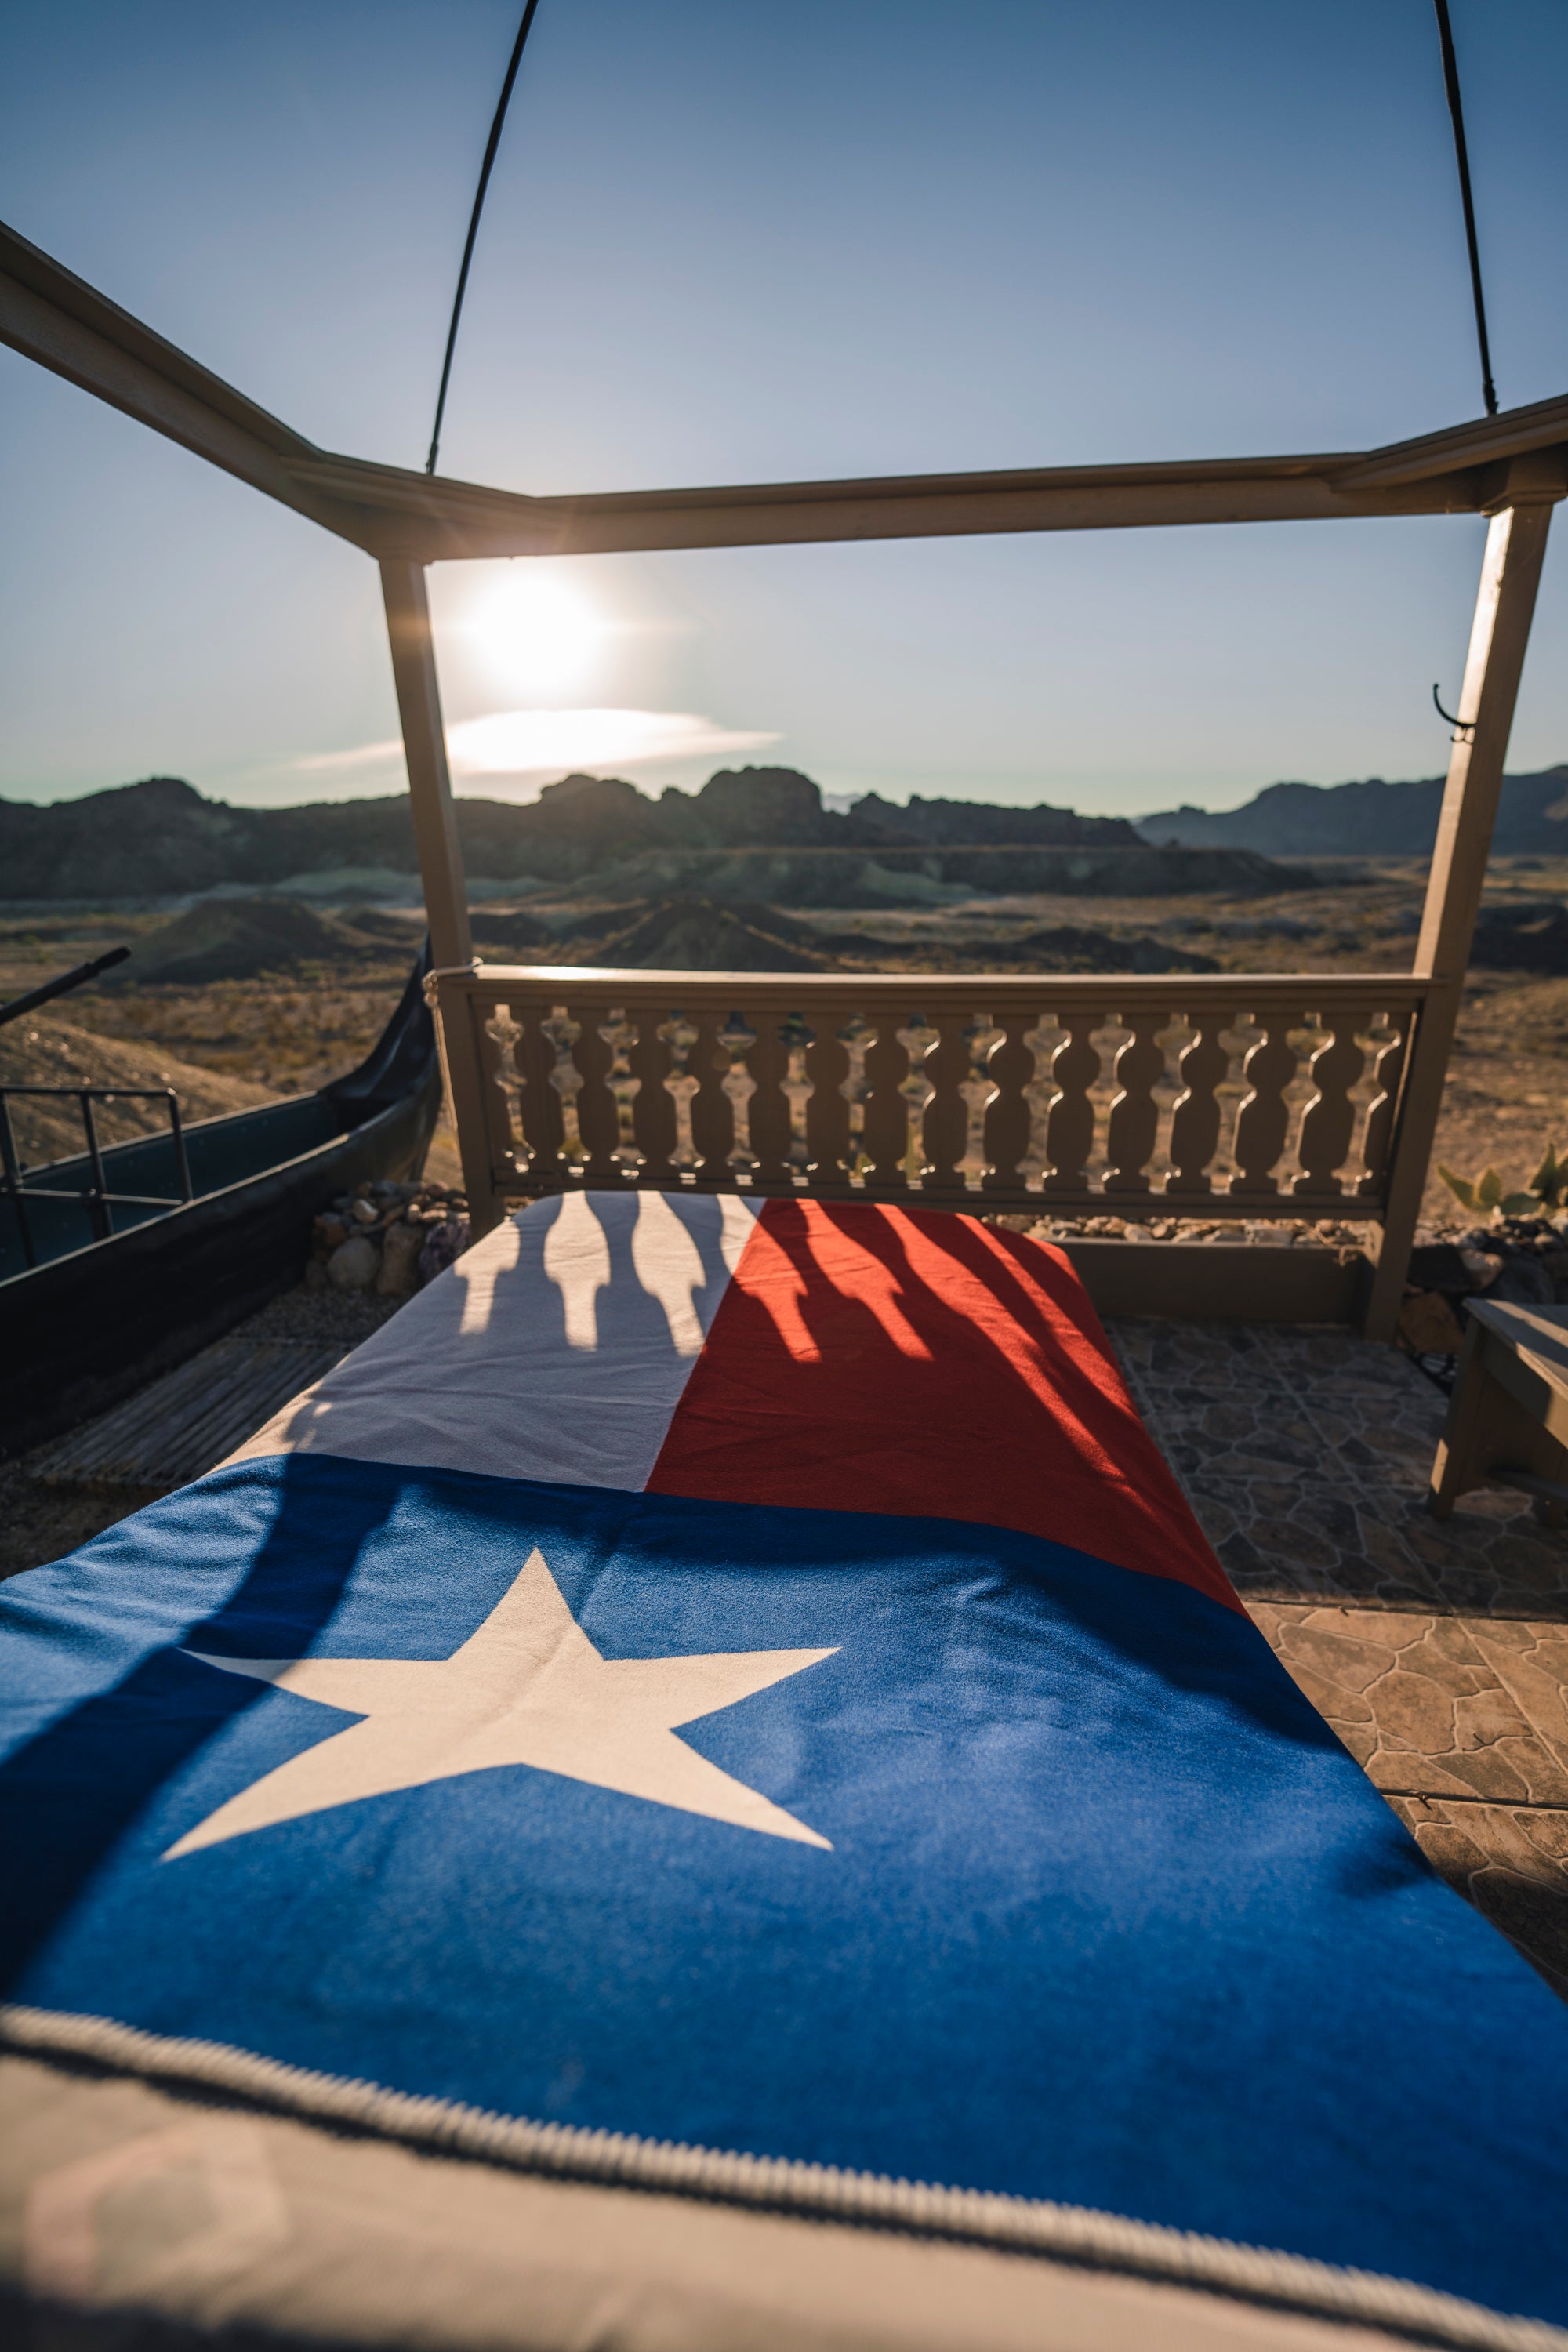 The Texas Flag Blanket